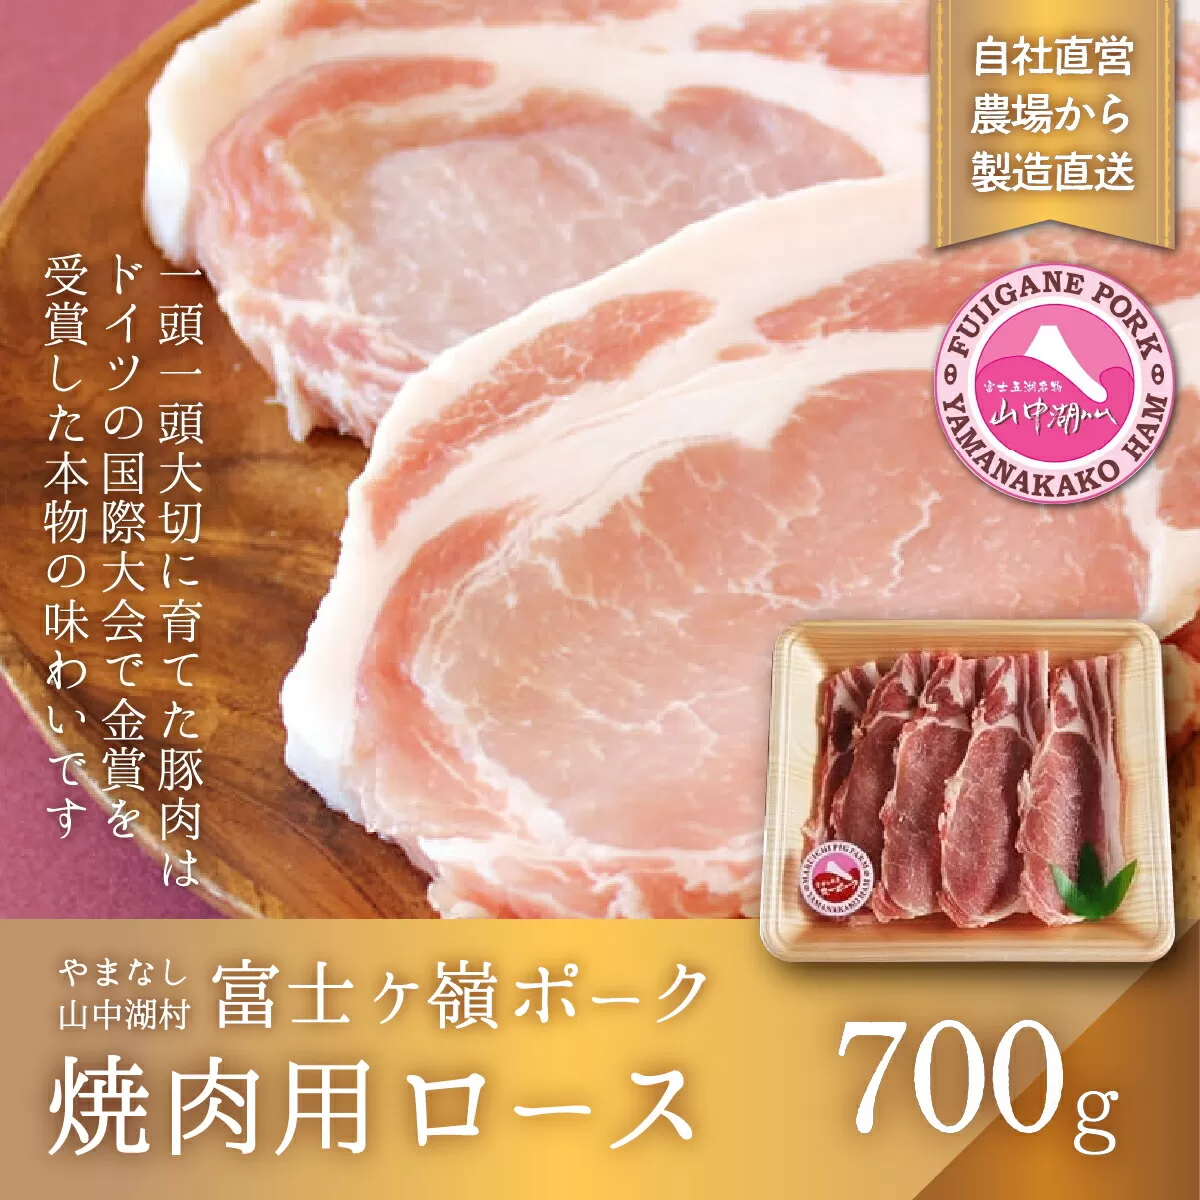 富士ケ嶺ポーク焼肉用 ロース700g YB016